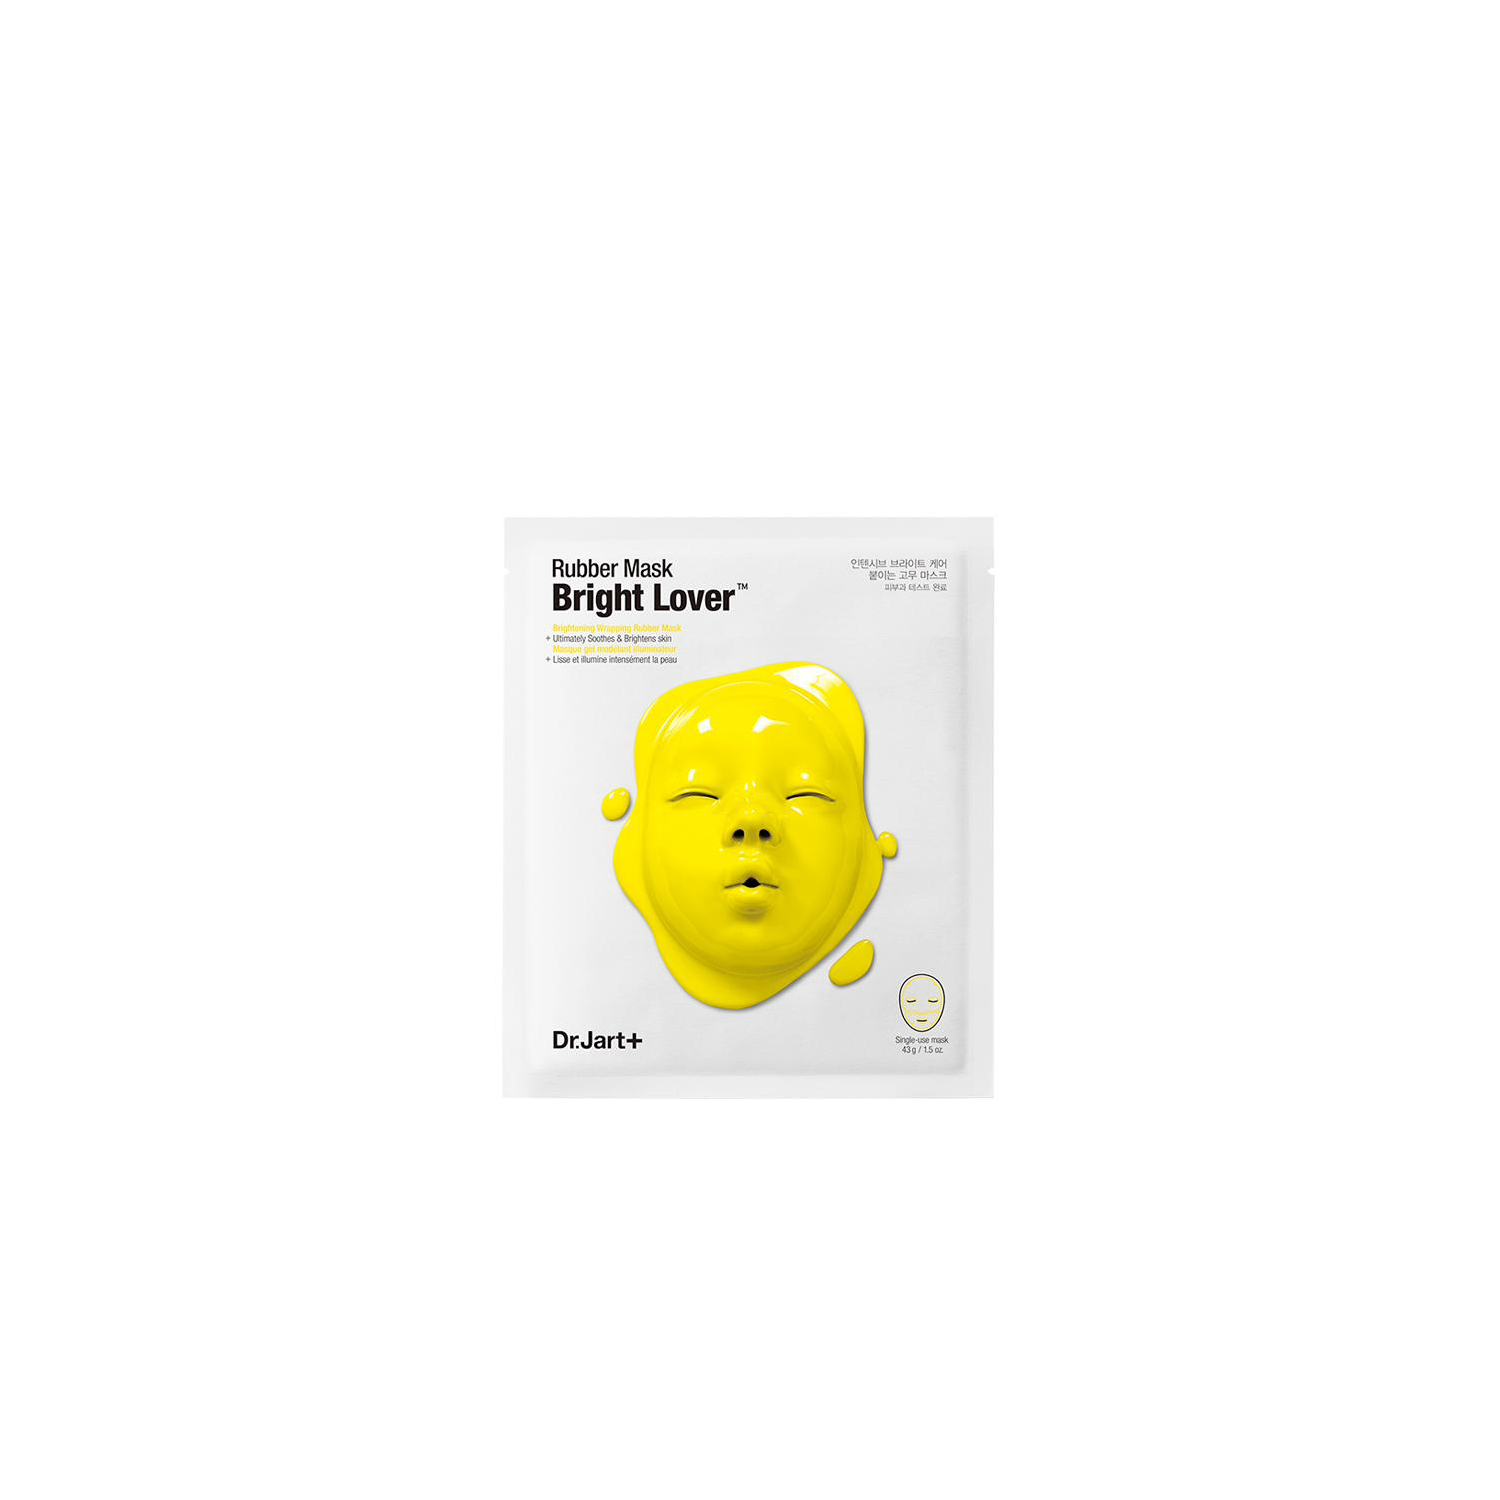 Dr. Jart+ Rubber Mask Bright Lover™